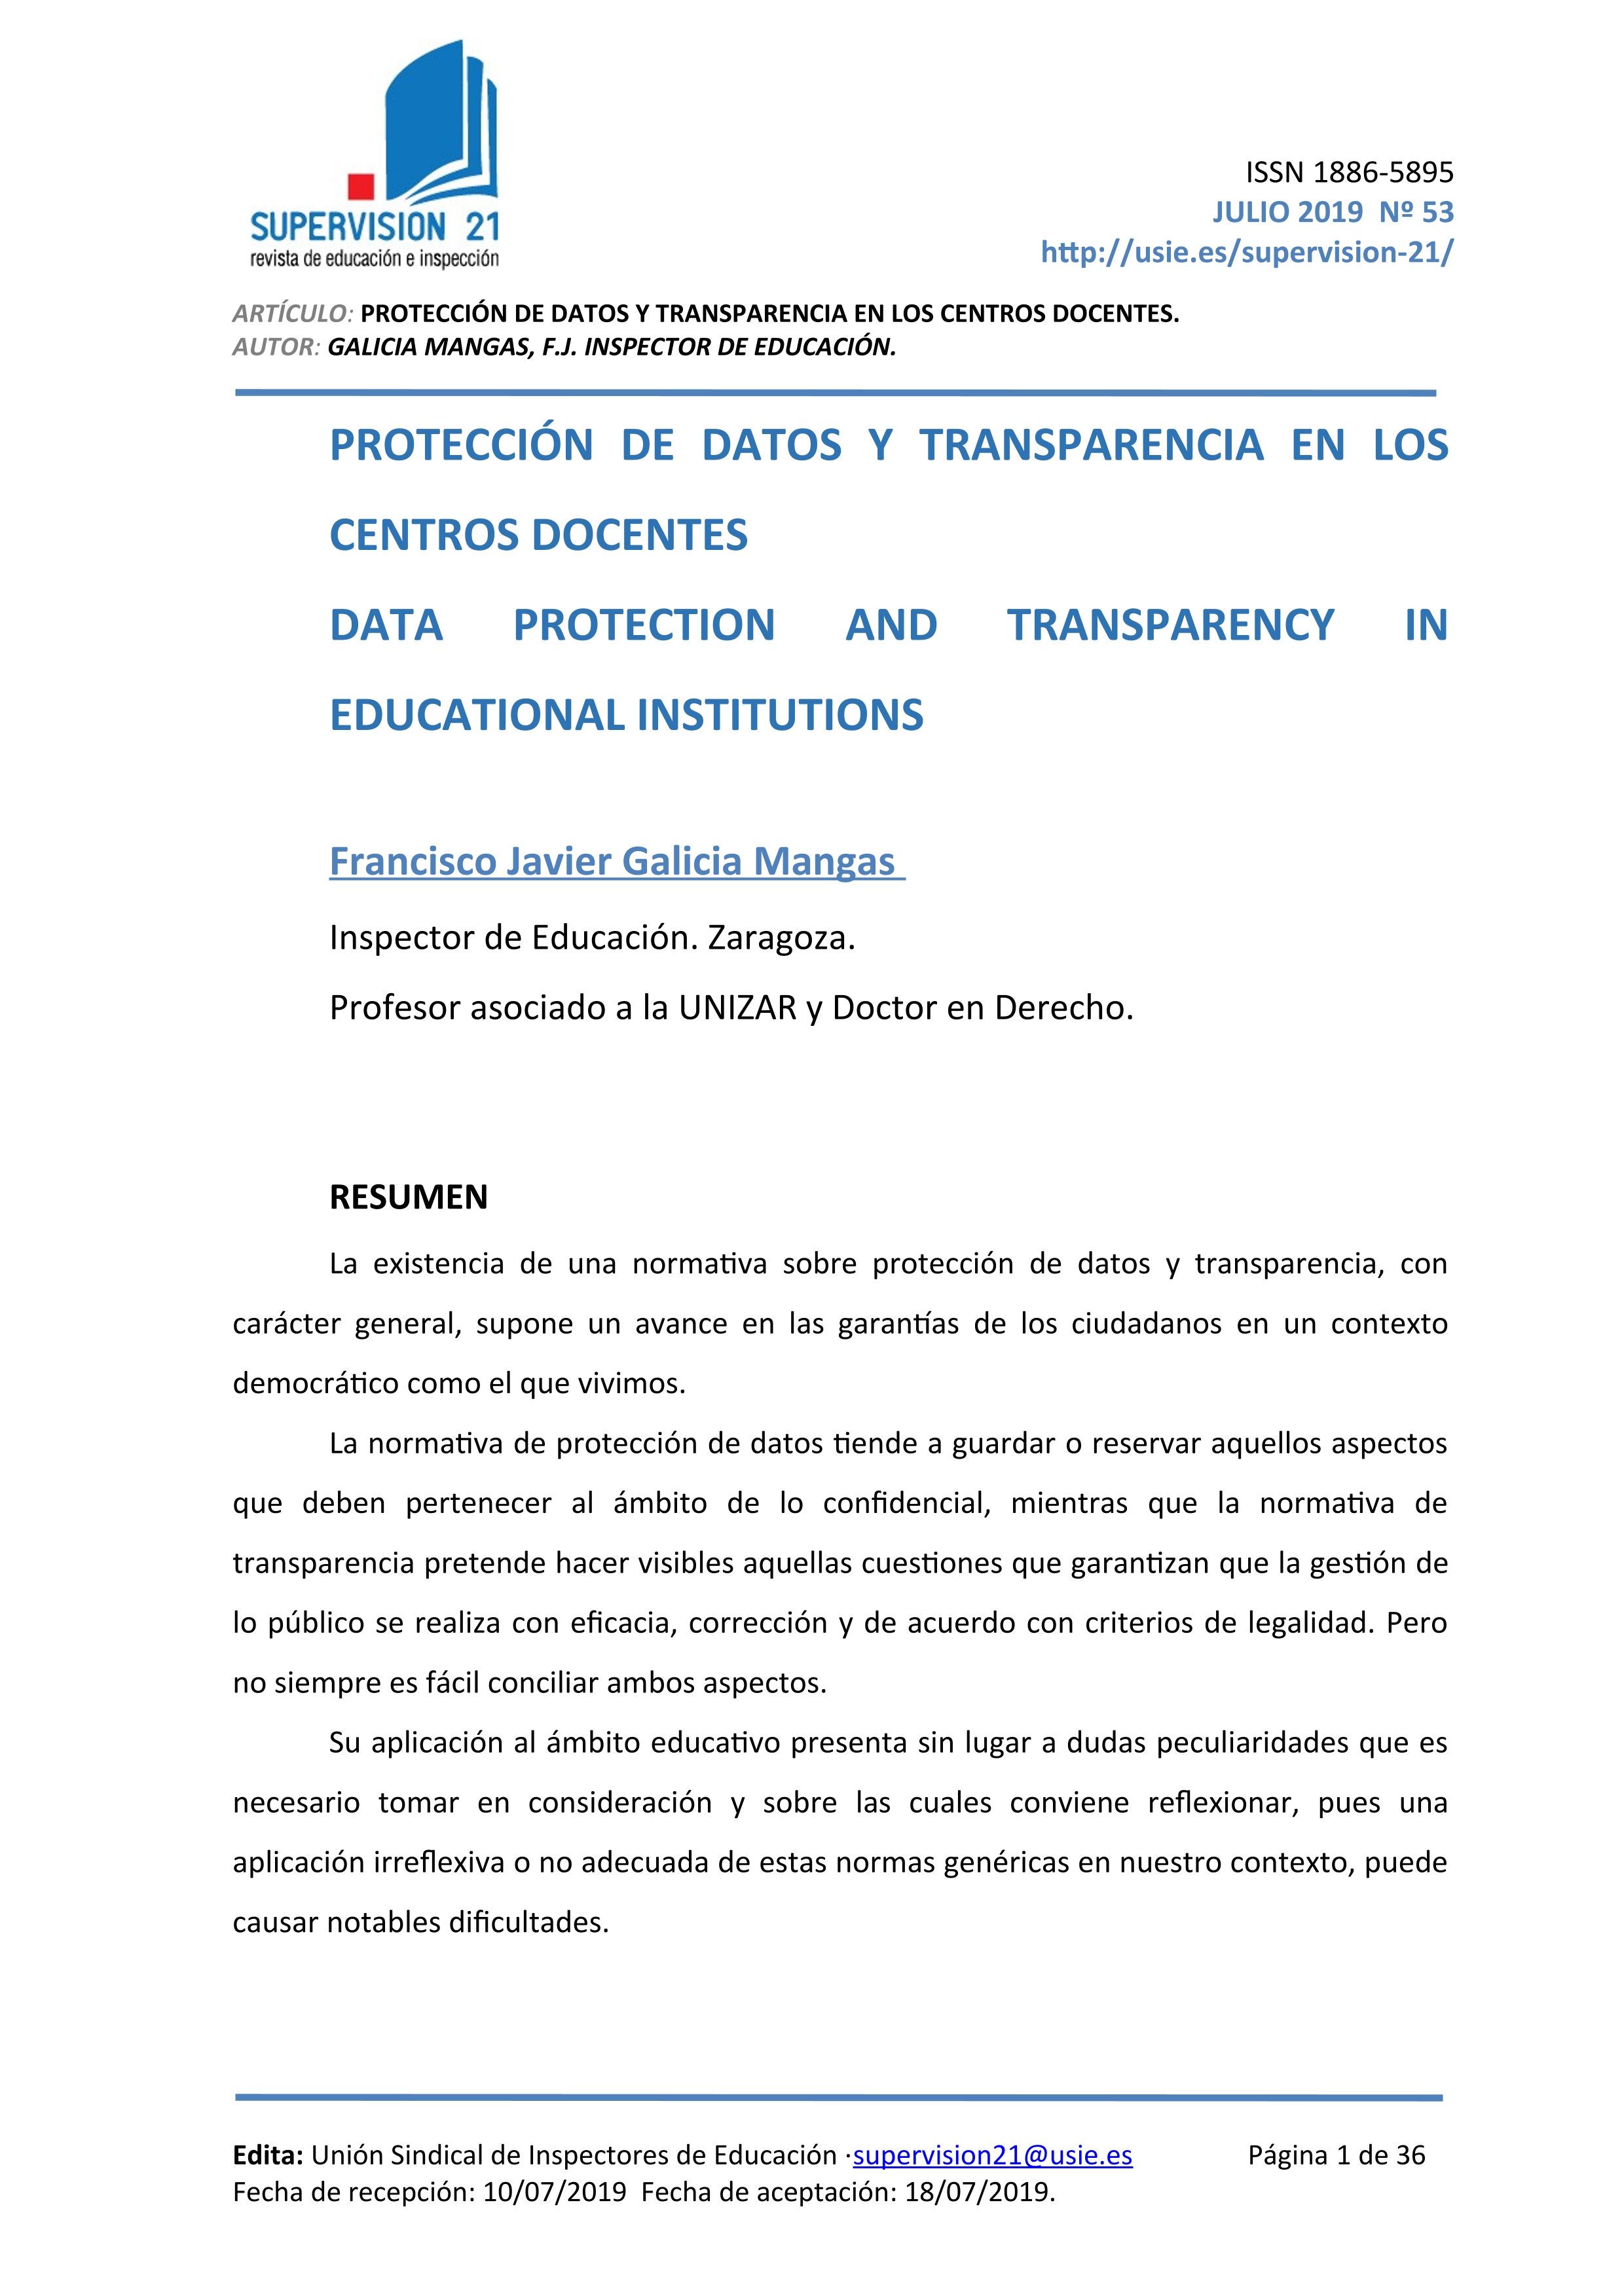 Protección de datos y transparencia en los centros docentes